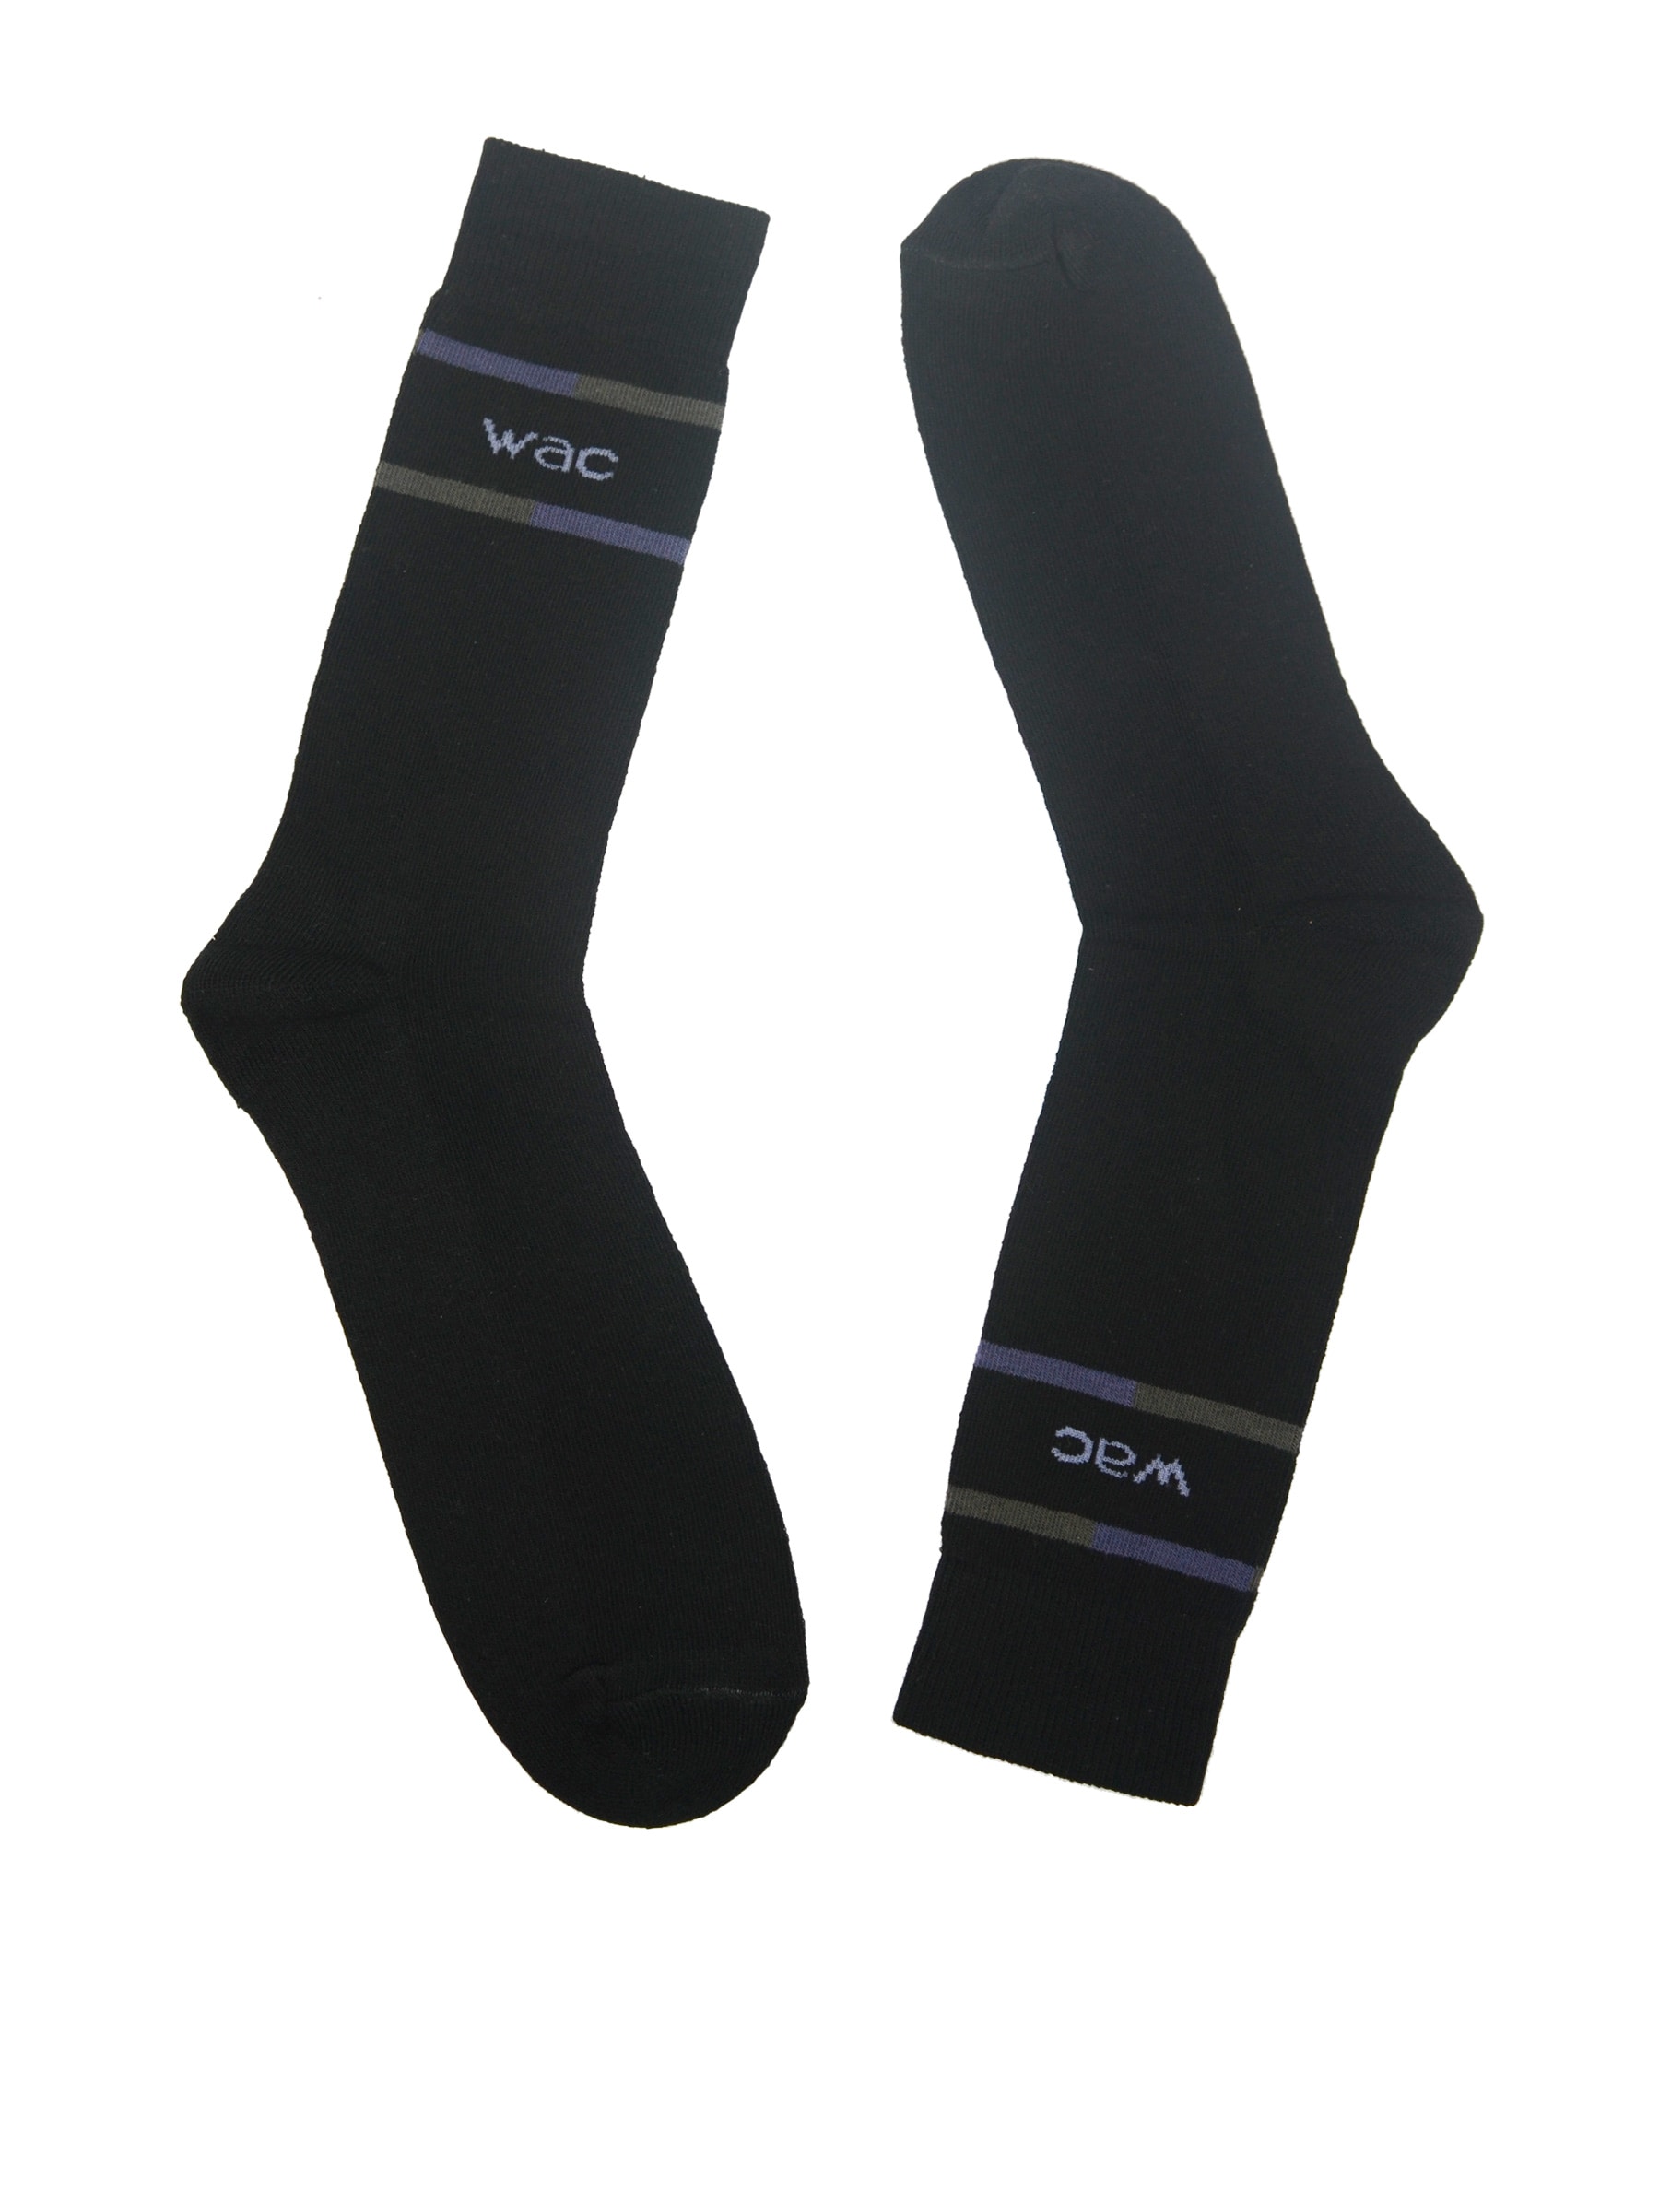 Wrangler Men's Black Crew Length Socks